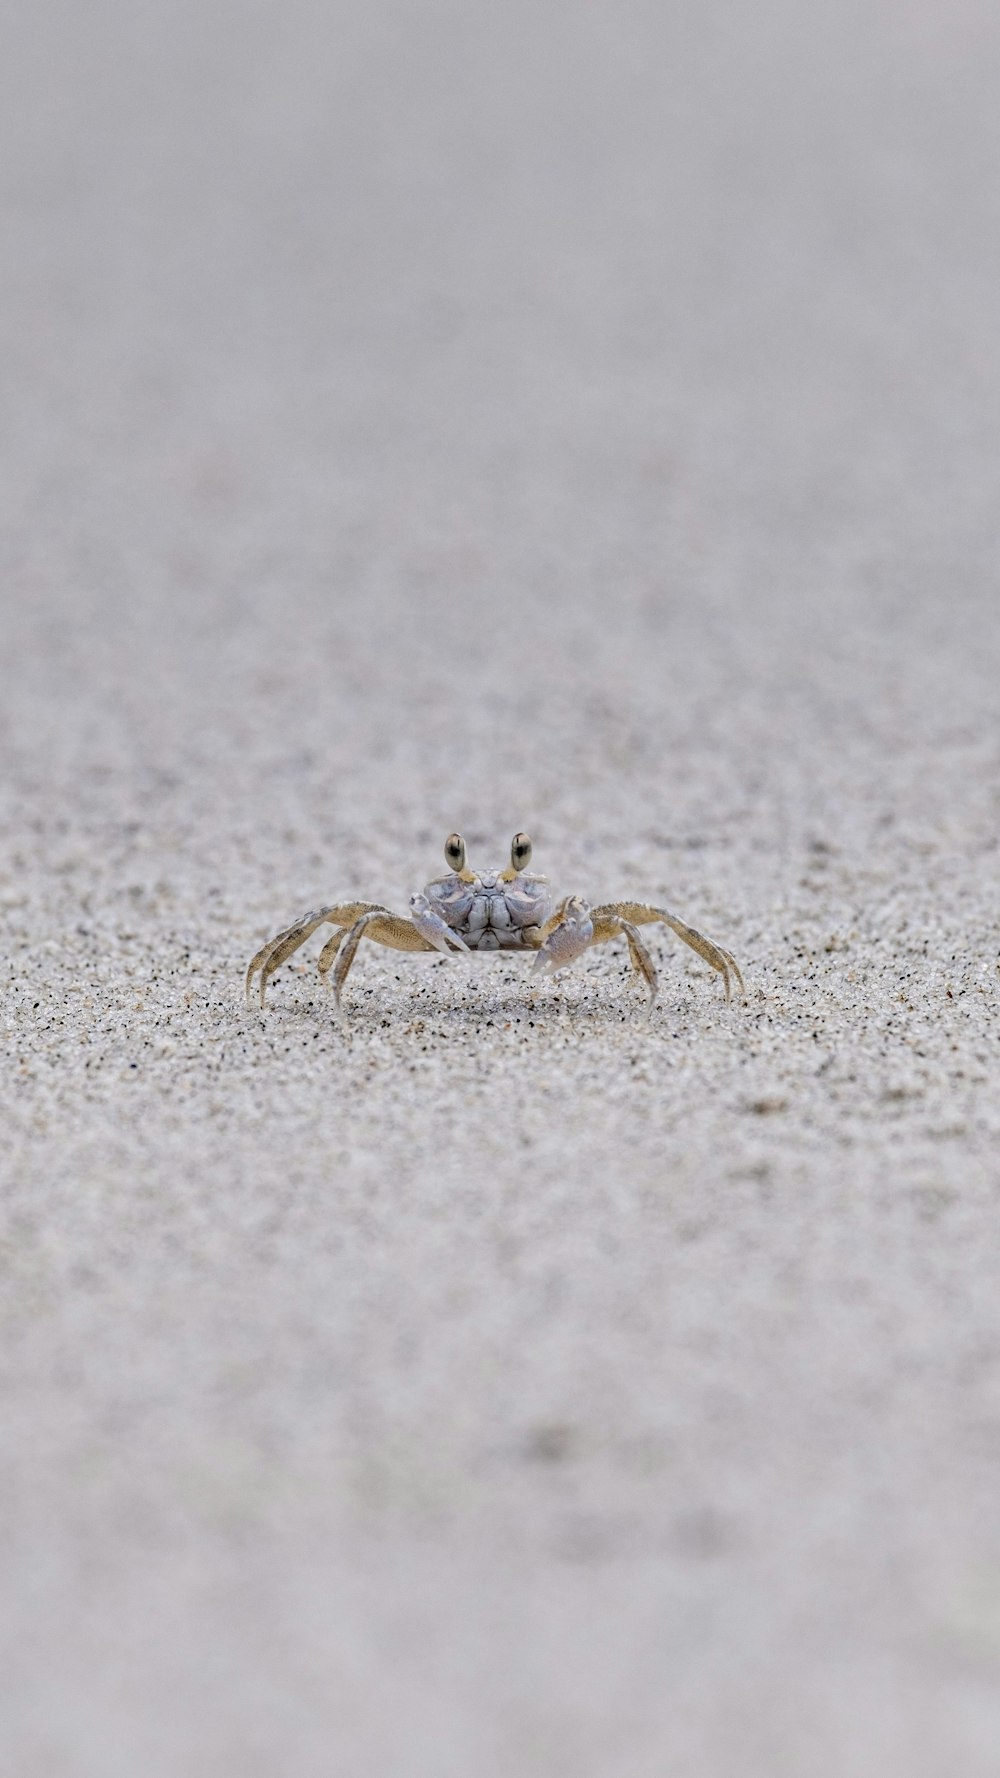 a crab on a beach